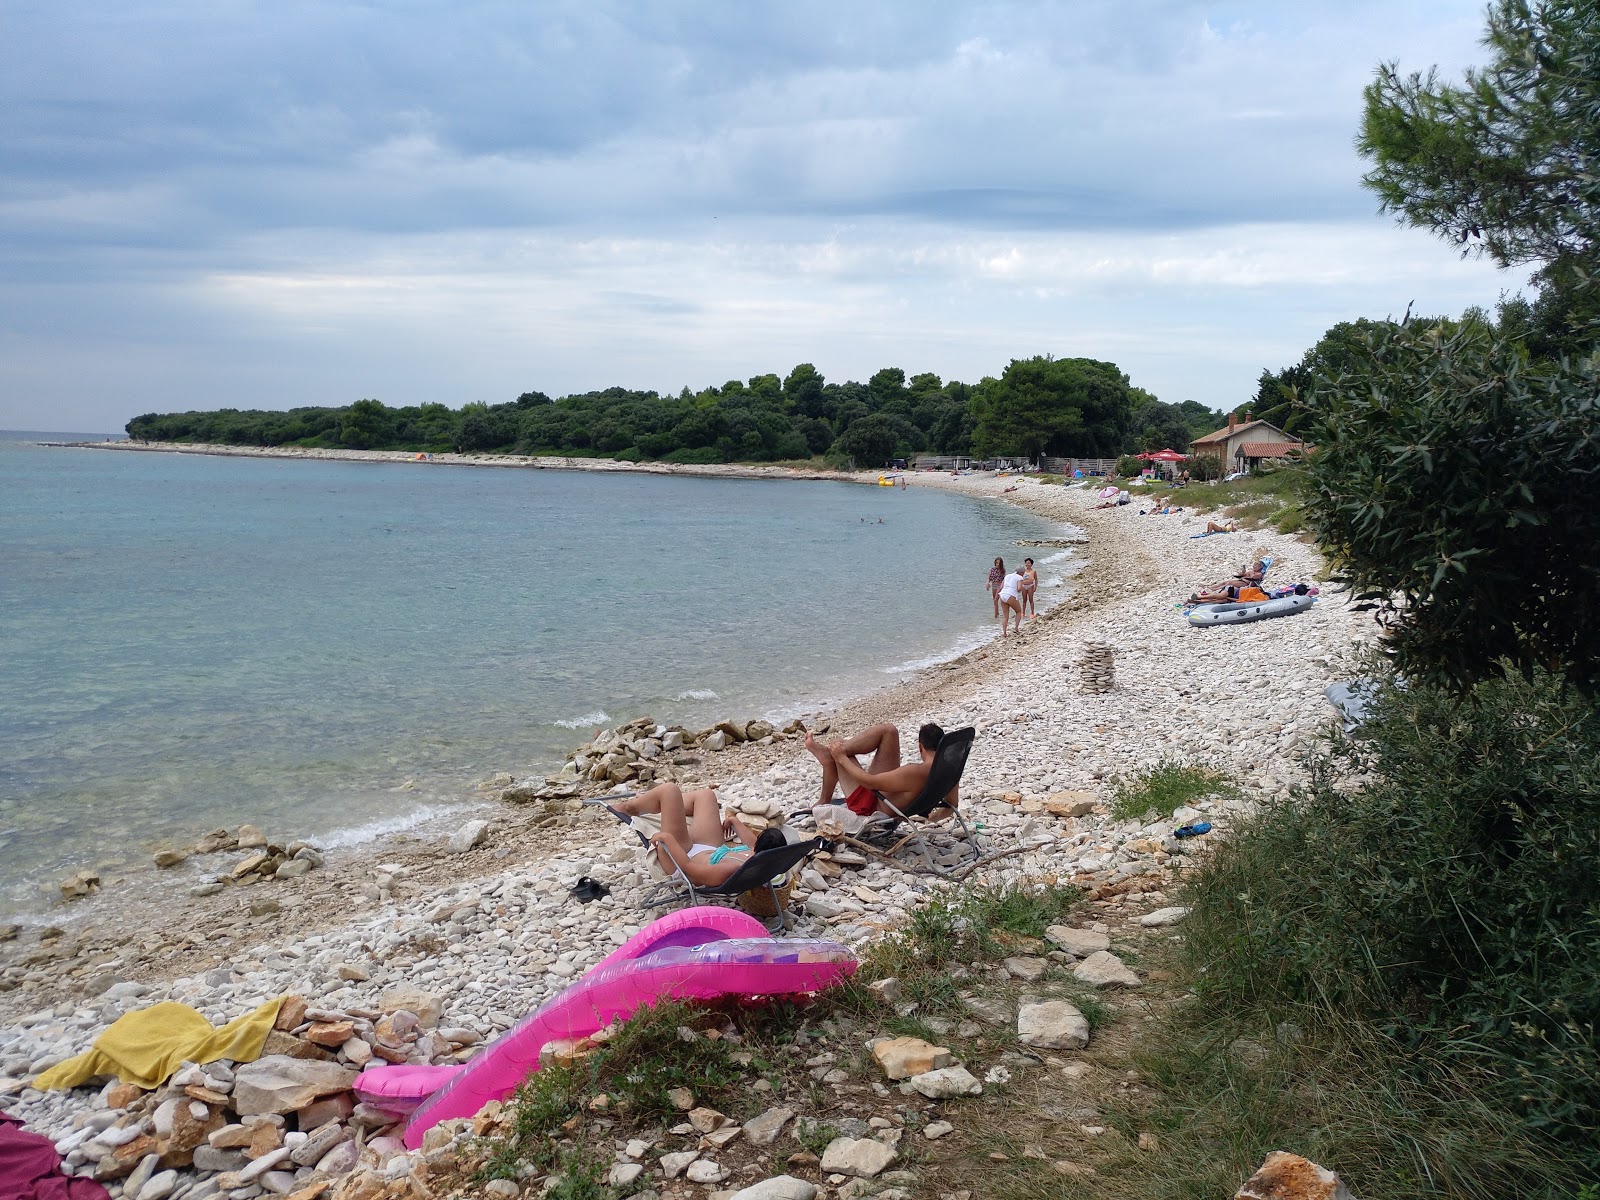 Photo de Meneghetti beach - endroit populaire parmi les connaisseurs de la détente